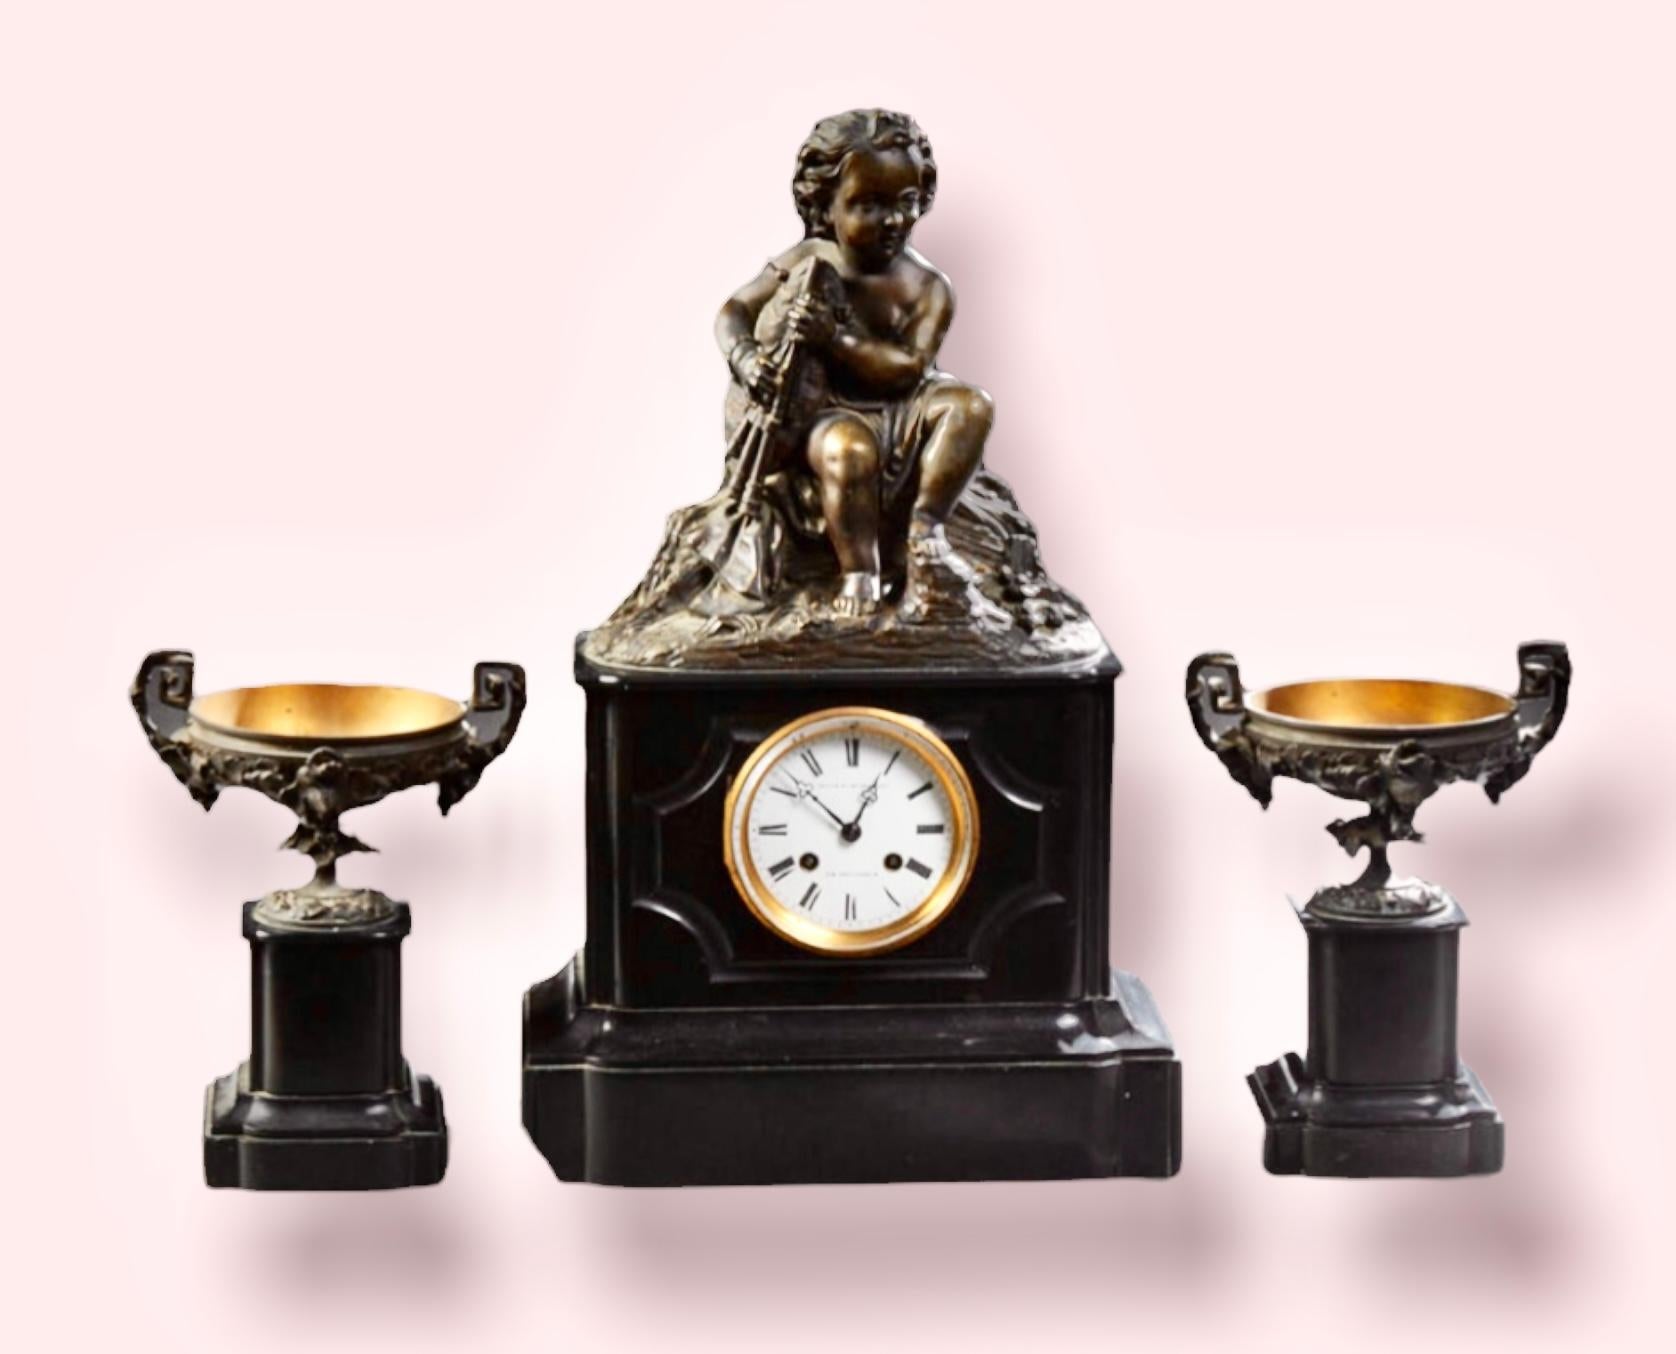 Exceptionnel ensemble d'horloge en bronze et marbre Napoléon III, vers 1880, avec une monture en bronze représentant un putto jouant de la cornemuse, au-dessus d'une horloge à tambour, heure et sonnerie, avec un cadran émaillé sur une base inclinée